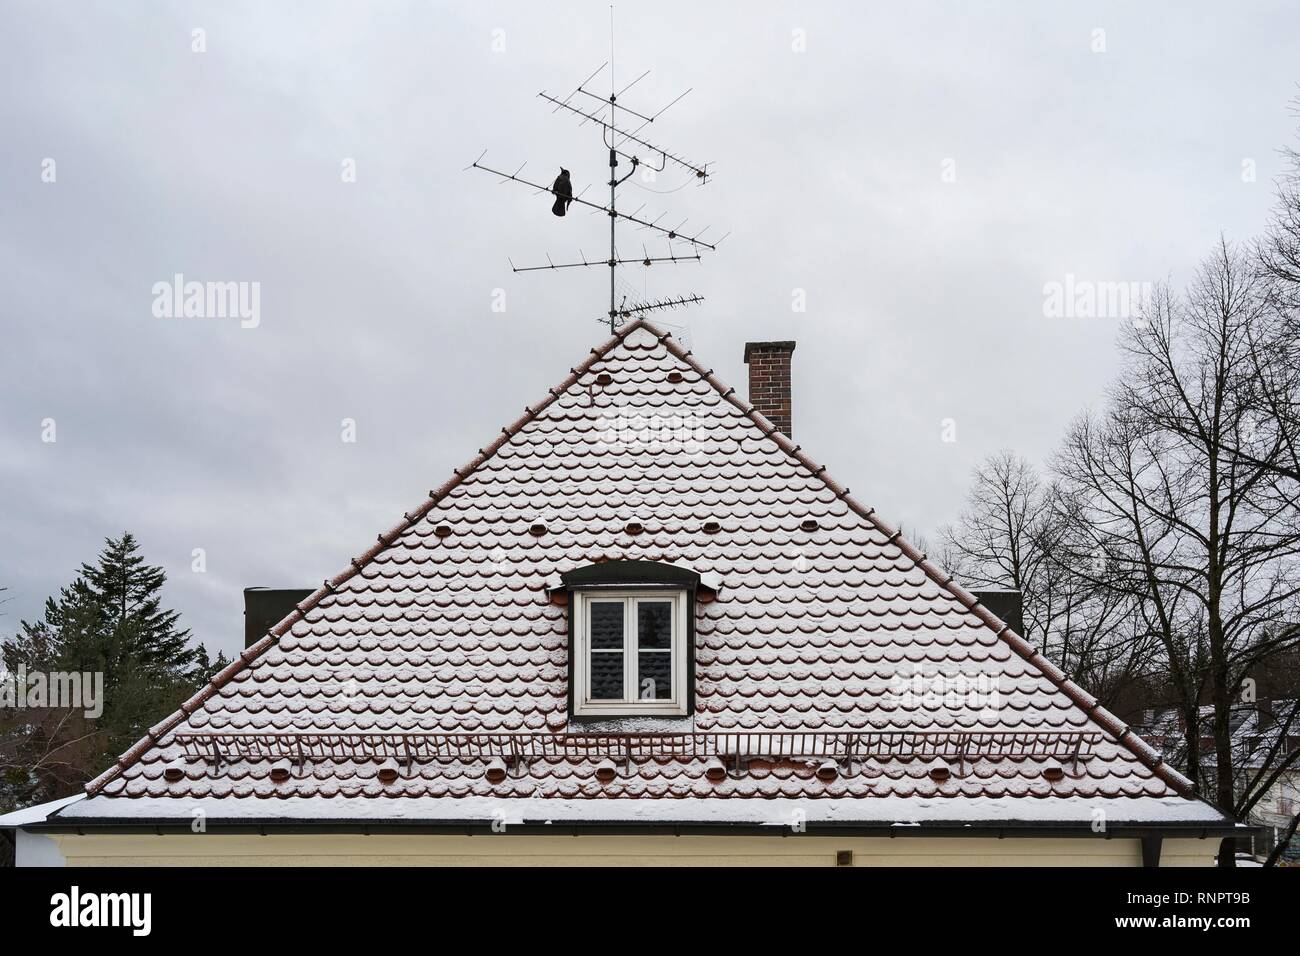 Casa con techo de tejas planas y nieve en invierno, Munich, la Alta Baviera, Baviera, Alemania Foto de stock